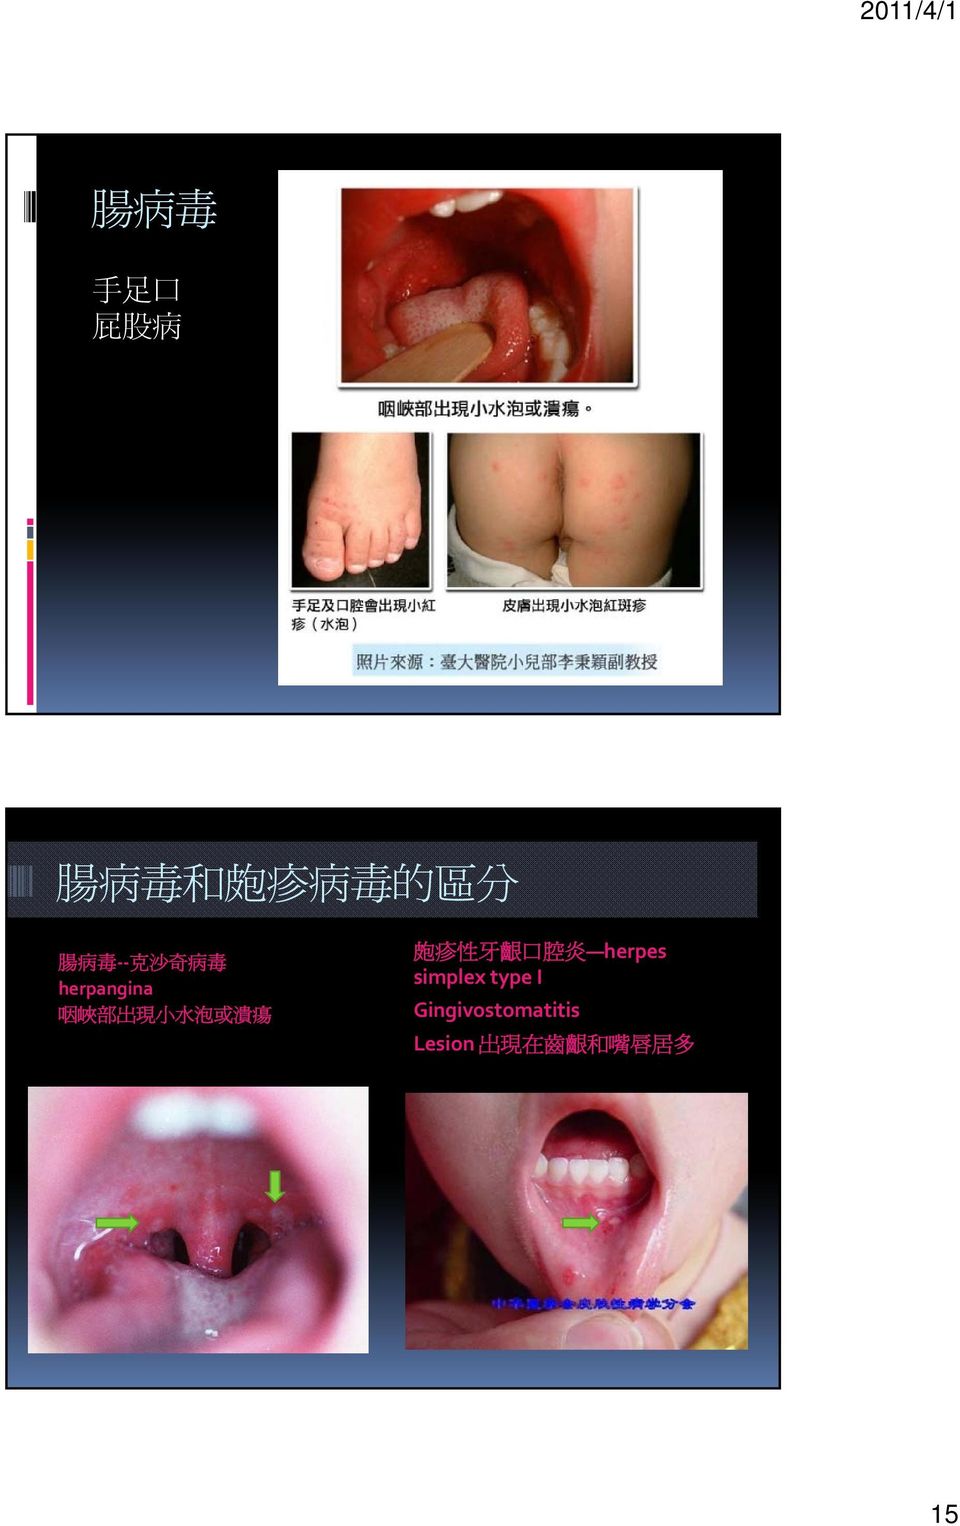 皰 疹 性 牙 齦 口 腔 炎 herpes simplex type I